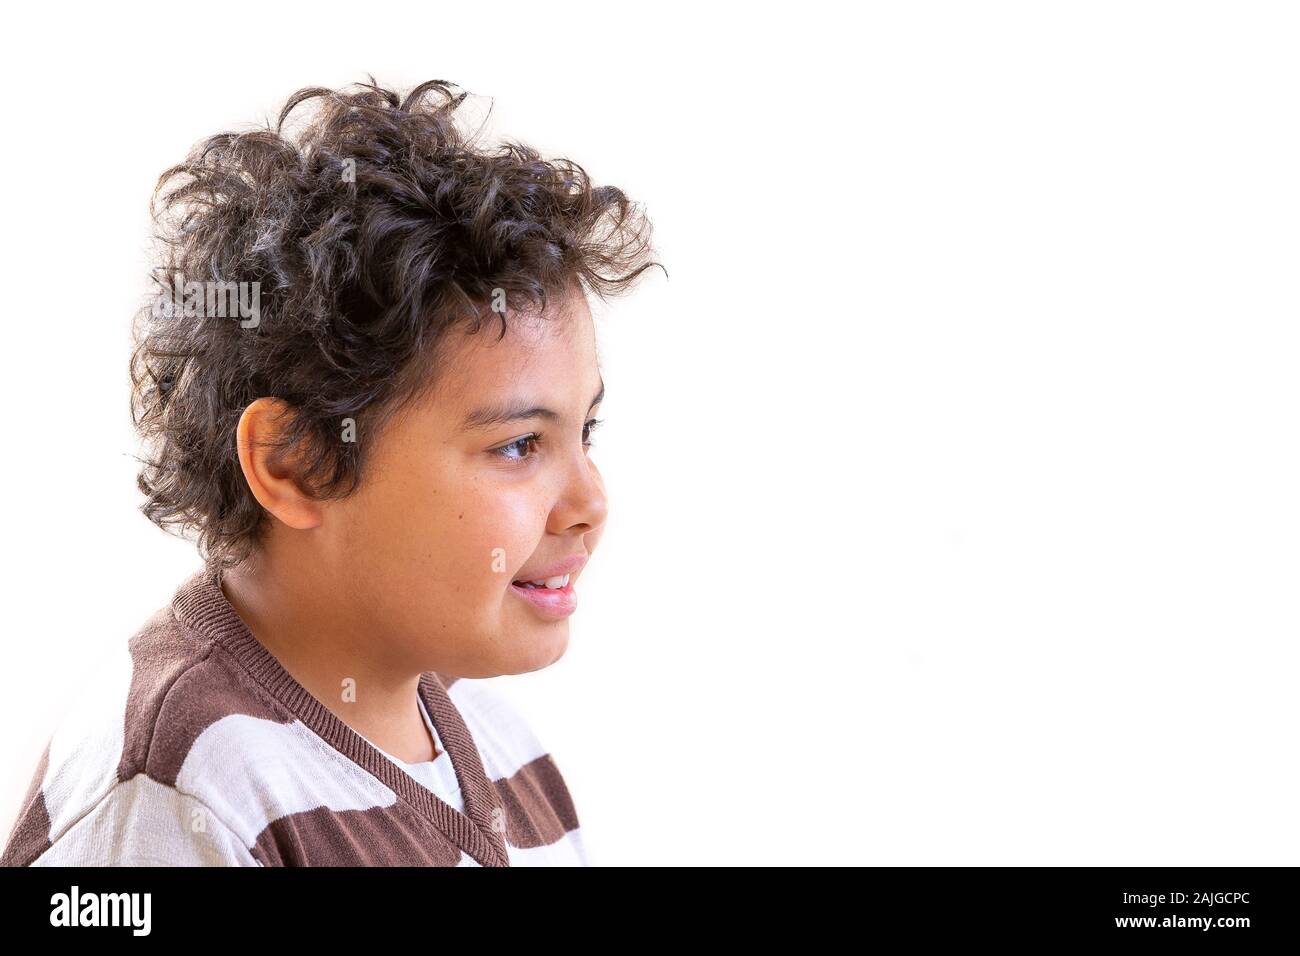 Concept d'une enfance heureuse, smiling boy teenager close-up Vue de profil Banque D'Images